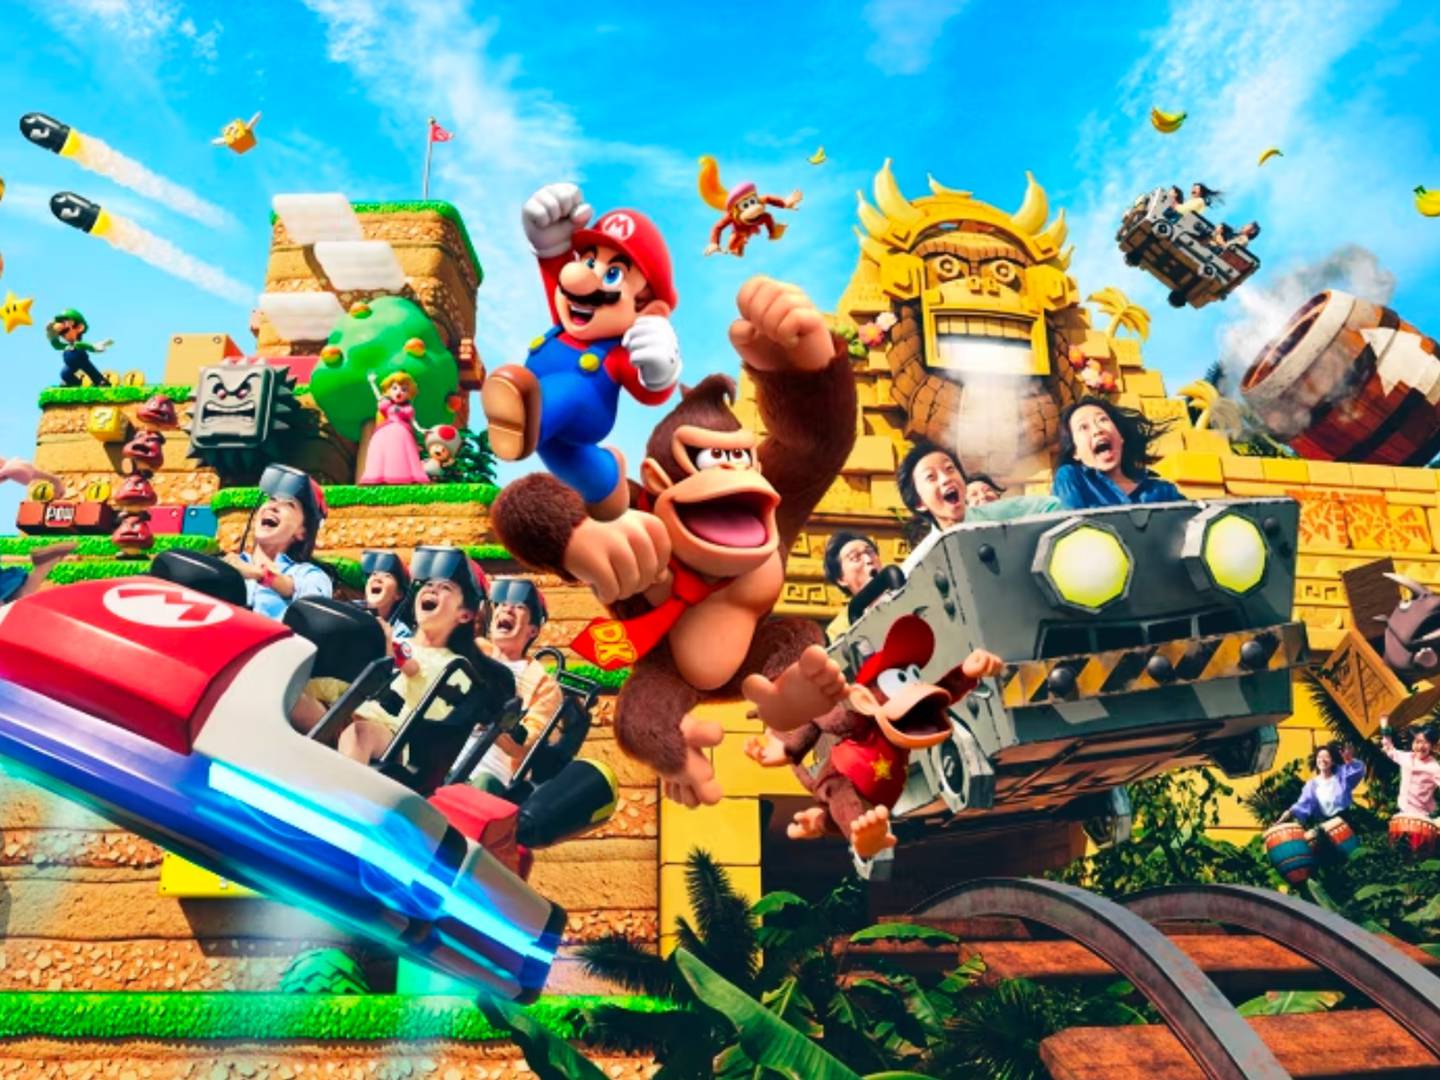 Donkey Kong: confira a evolução dos gráficos da franquia da Nintendo